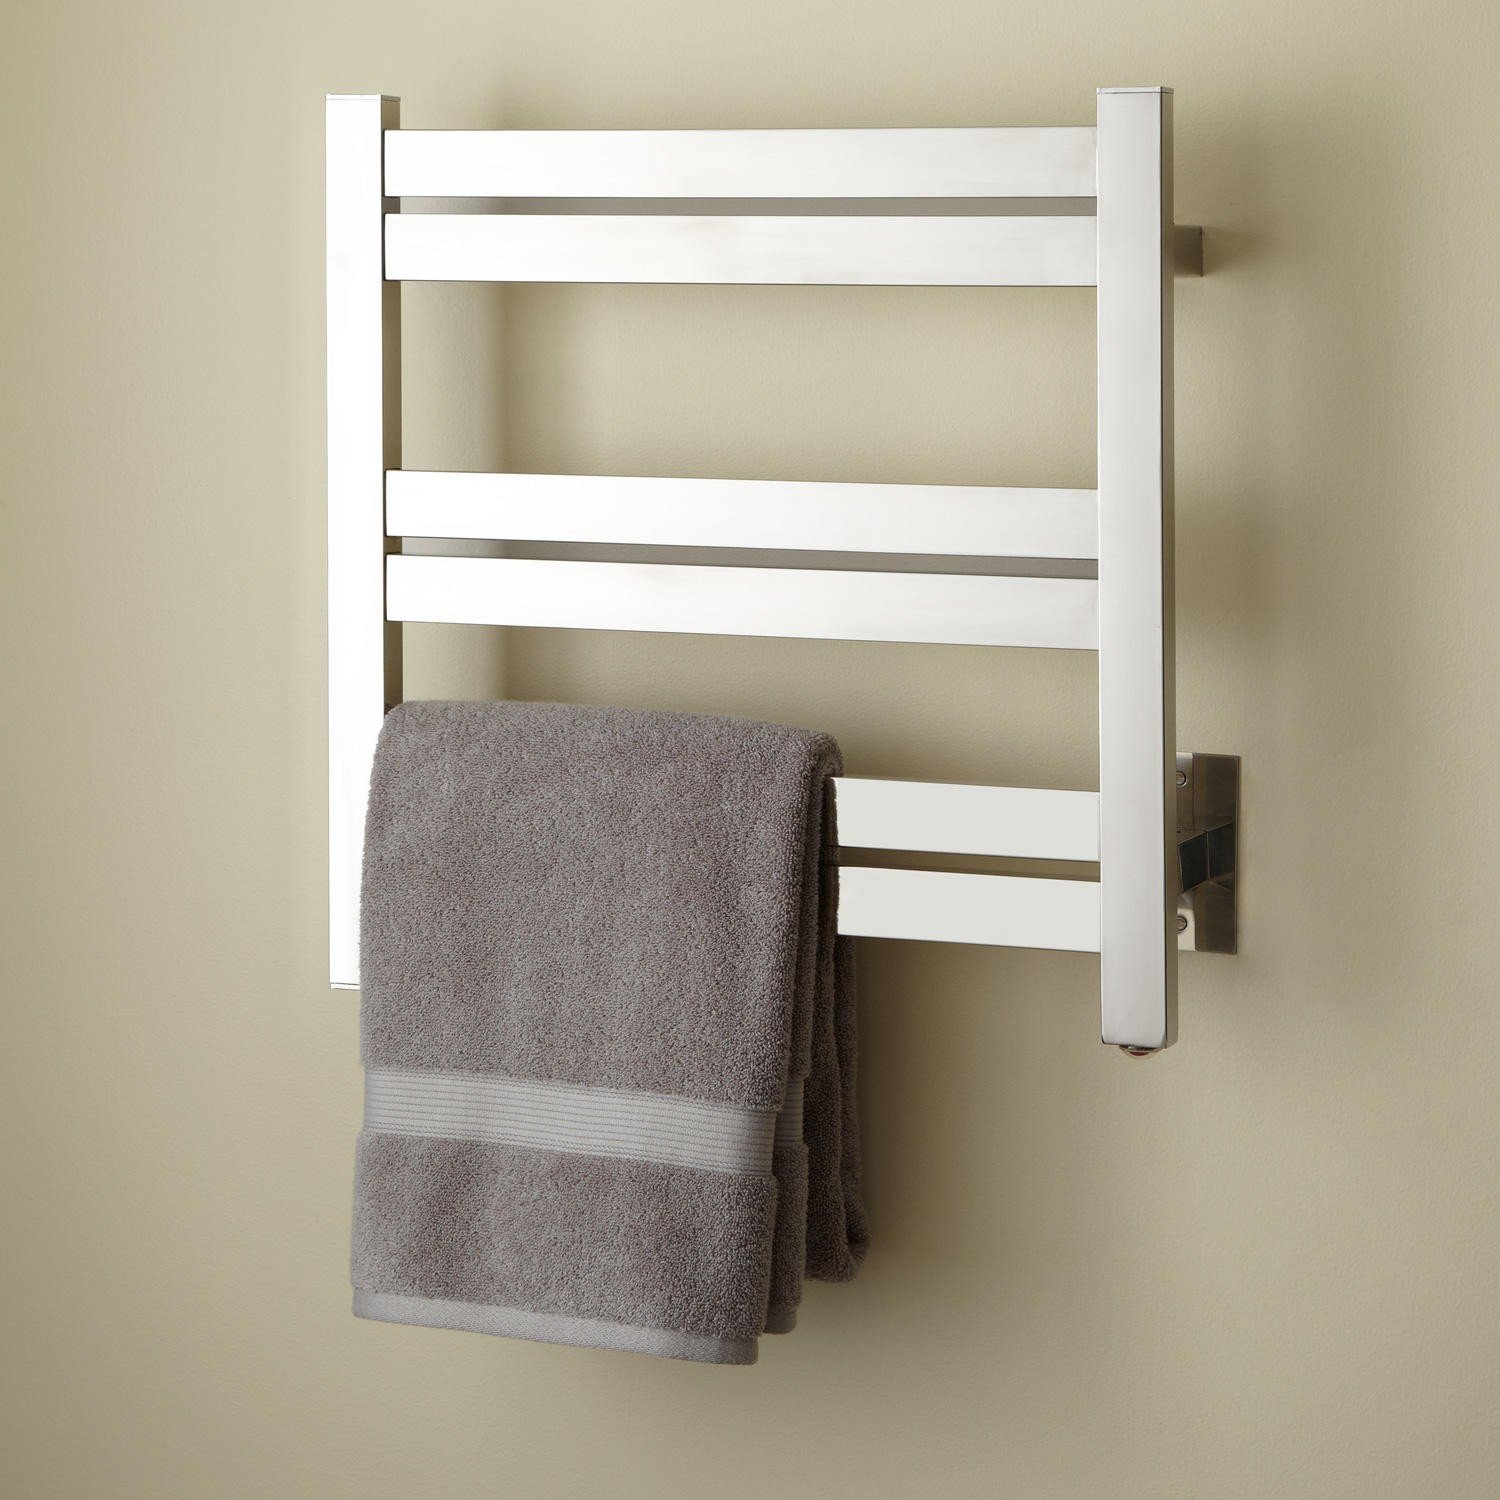 Высуши полотенце. TB-0009 built-in Towel Warmer полотенцесушитель. Сушилка Towel Warmer. Полотенцесушитель Towel Rack r116. Полотенцесушитель р6550 hot Towel Cabinet.